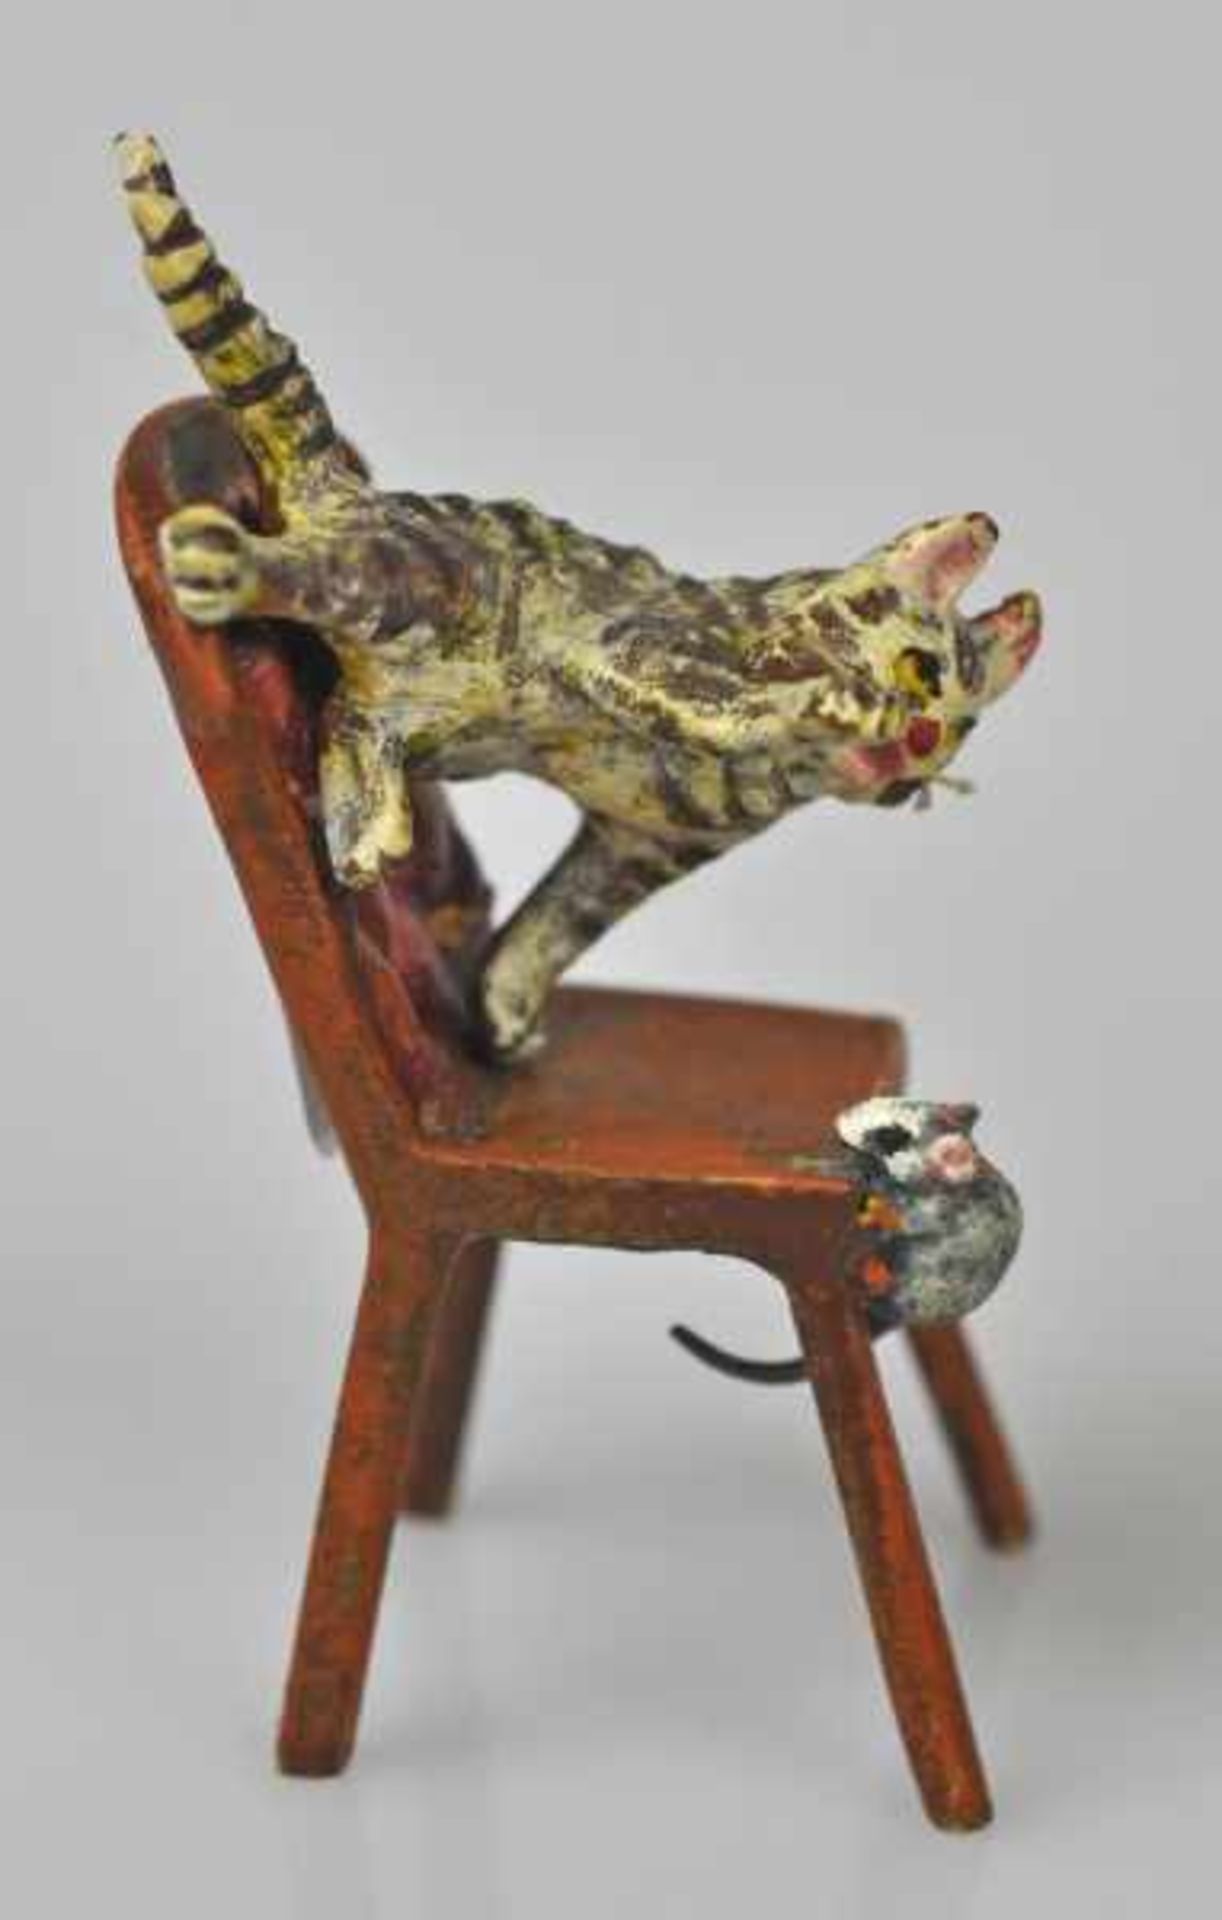 KATZE eine Maus jagend, auf Stuhl, Wiener Bronze, gemarkt u. bez. Bermann Wien, H 5cm - Image 5 of 5